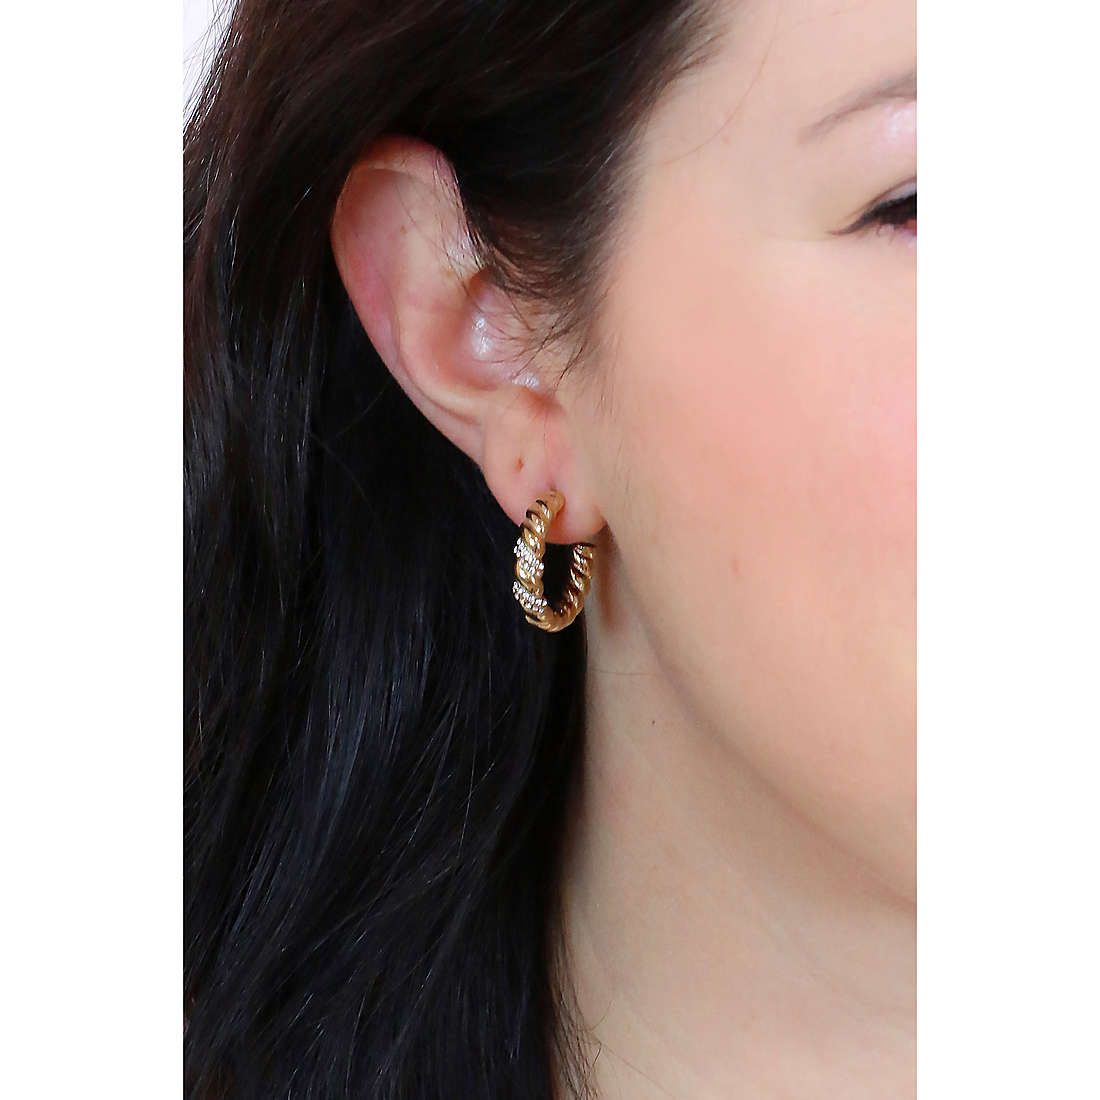 Fossil earrings Jewelry woman JF04170710 wearing